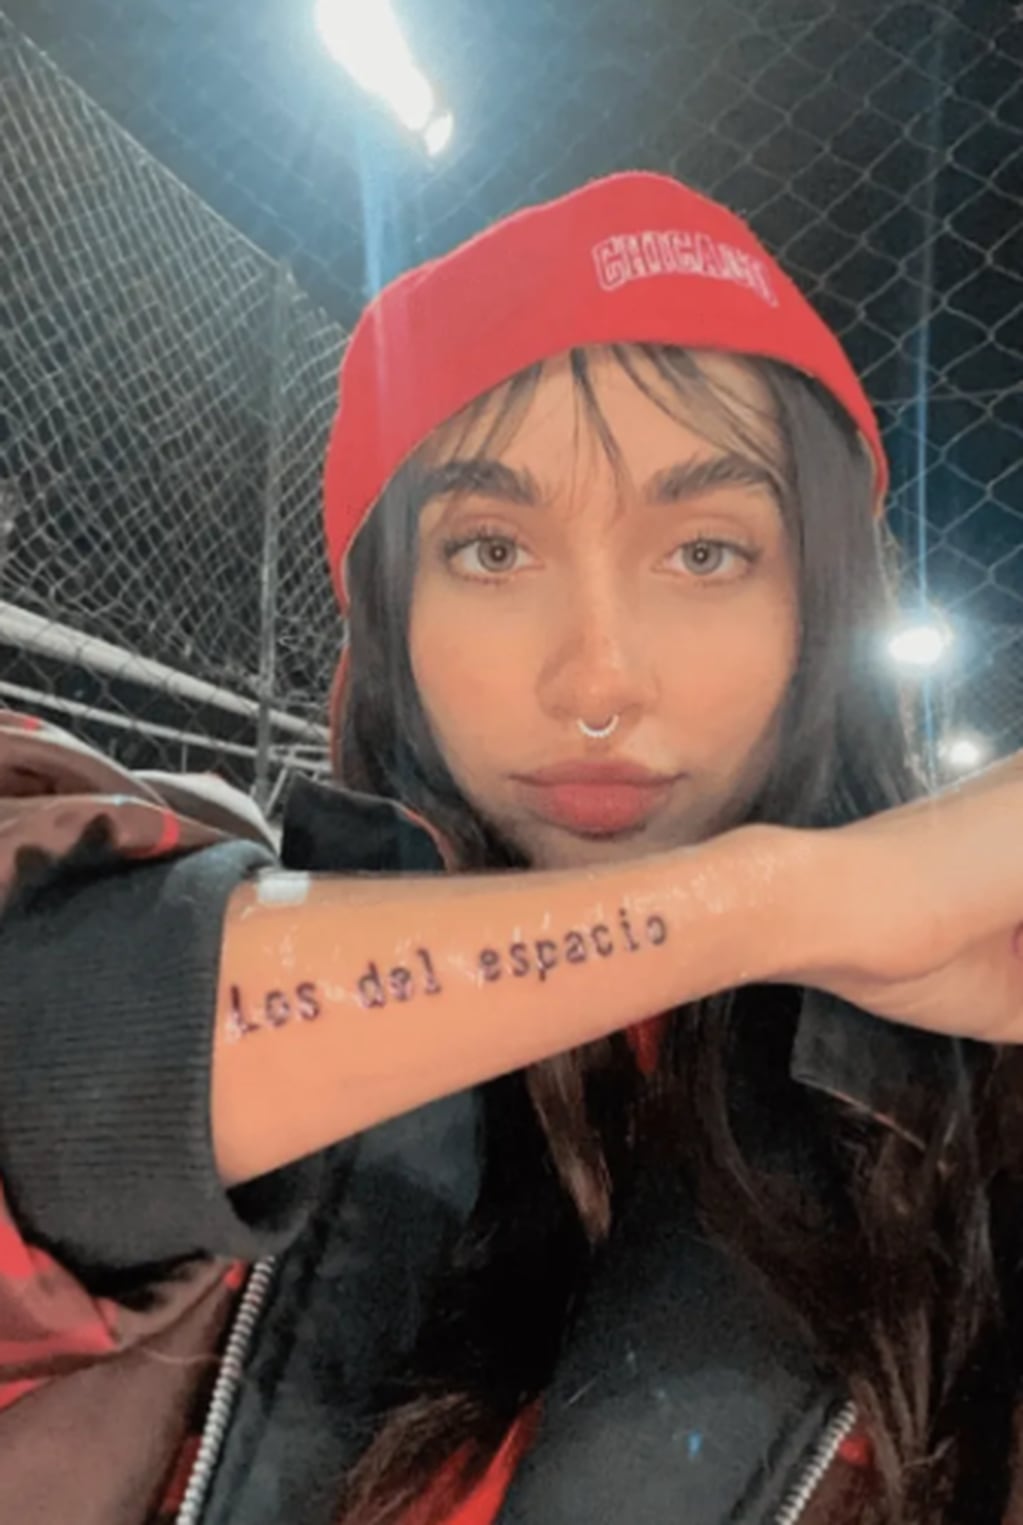 María Becerra y su tatuaje de "Los del espacio"